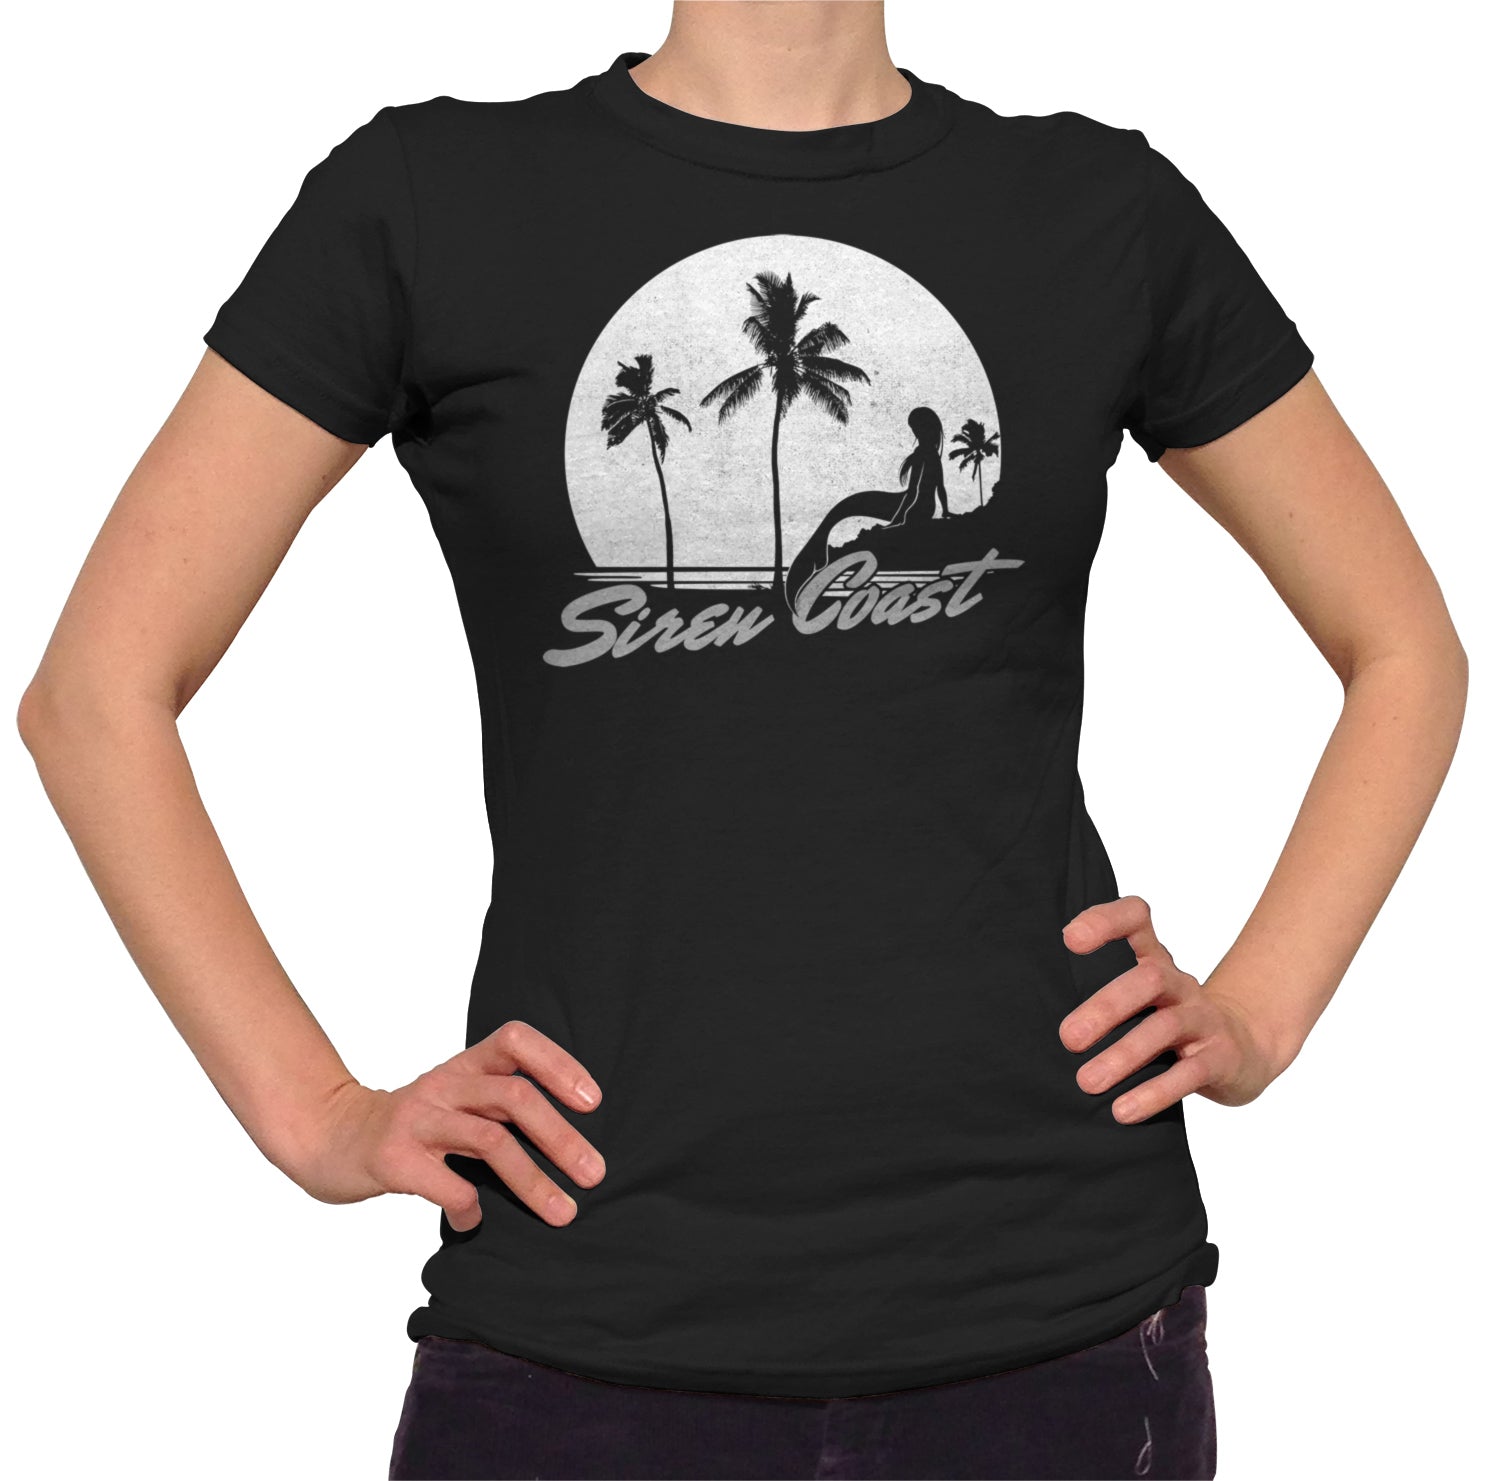 Women's Siren Coast T-Shirt